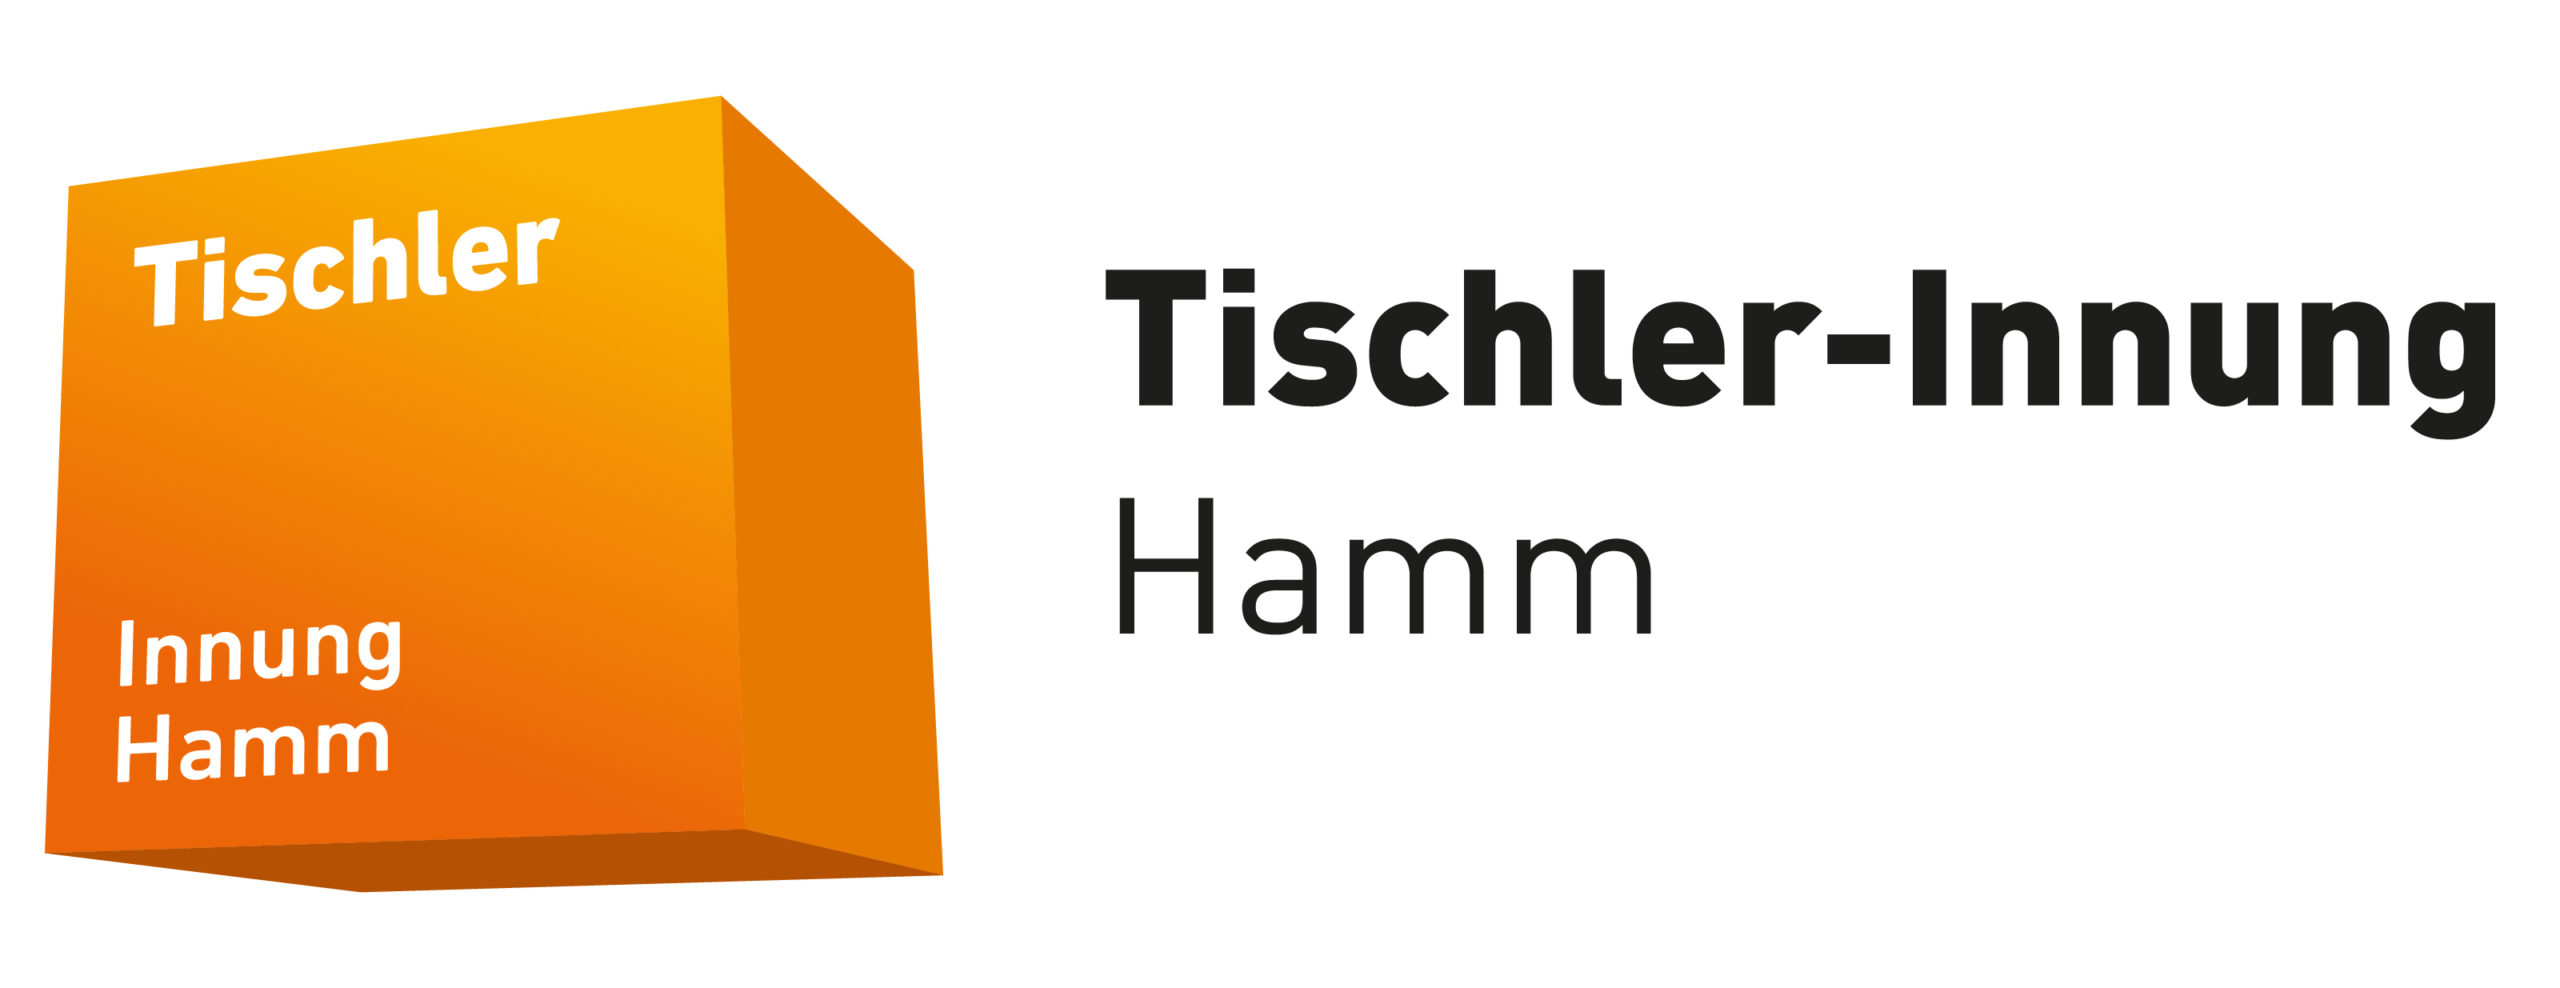 Tischler-Innung Hamm